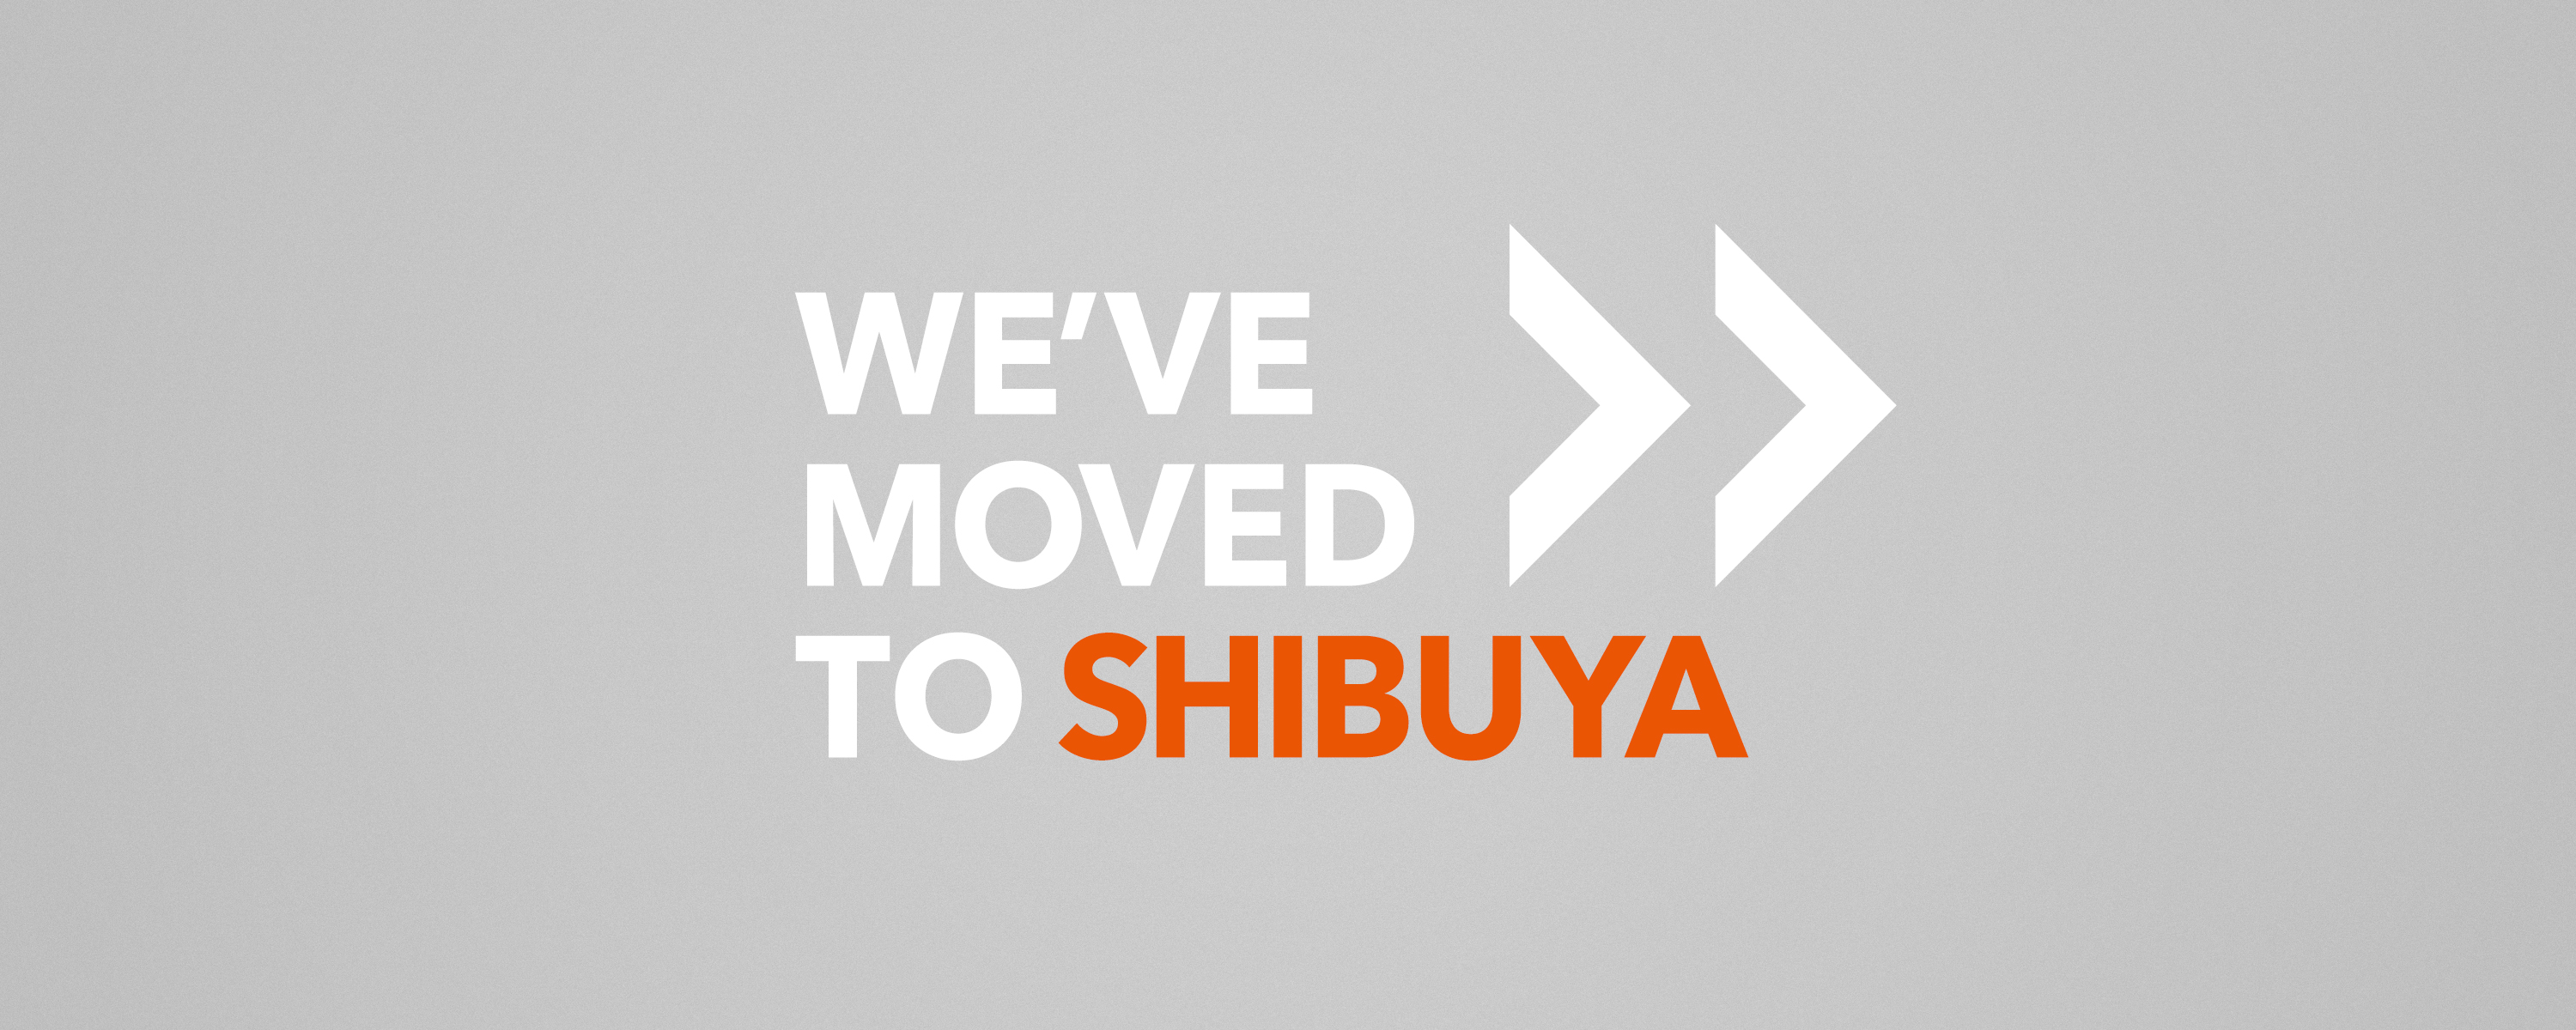 WE'VE MOVED TO SHIBUYA